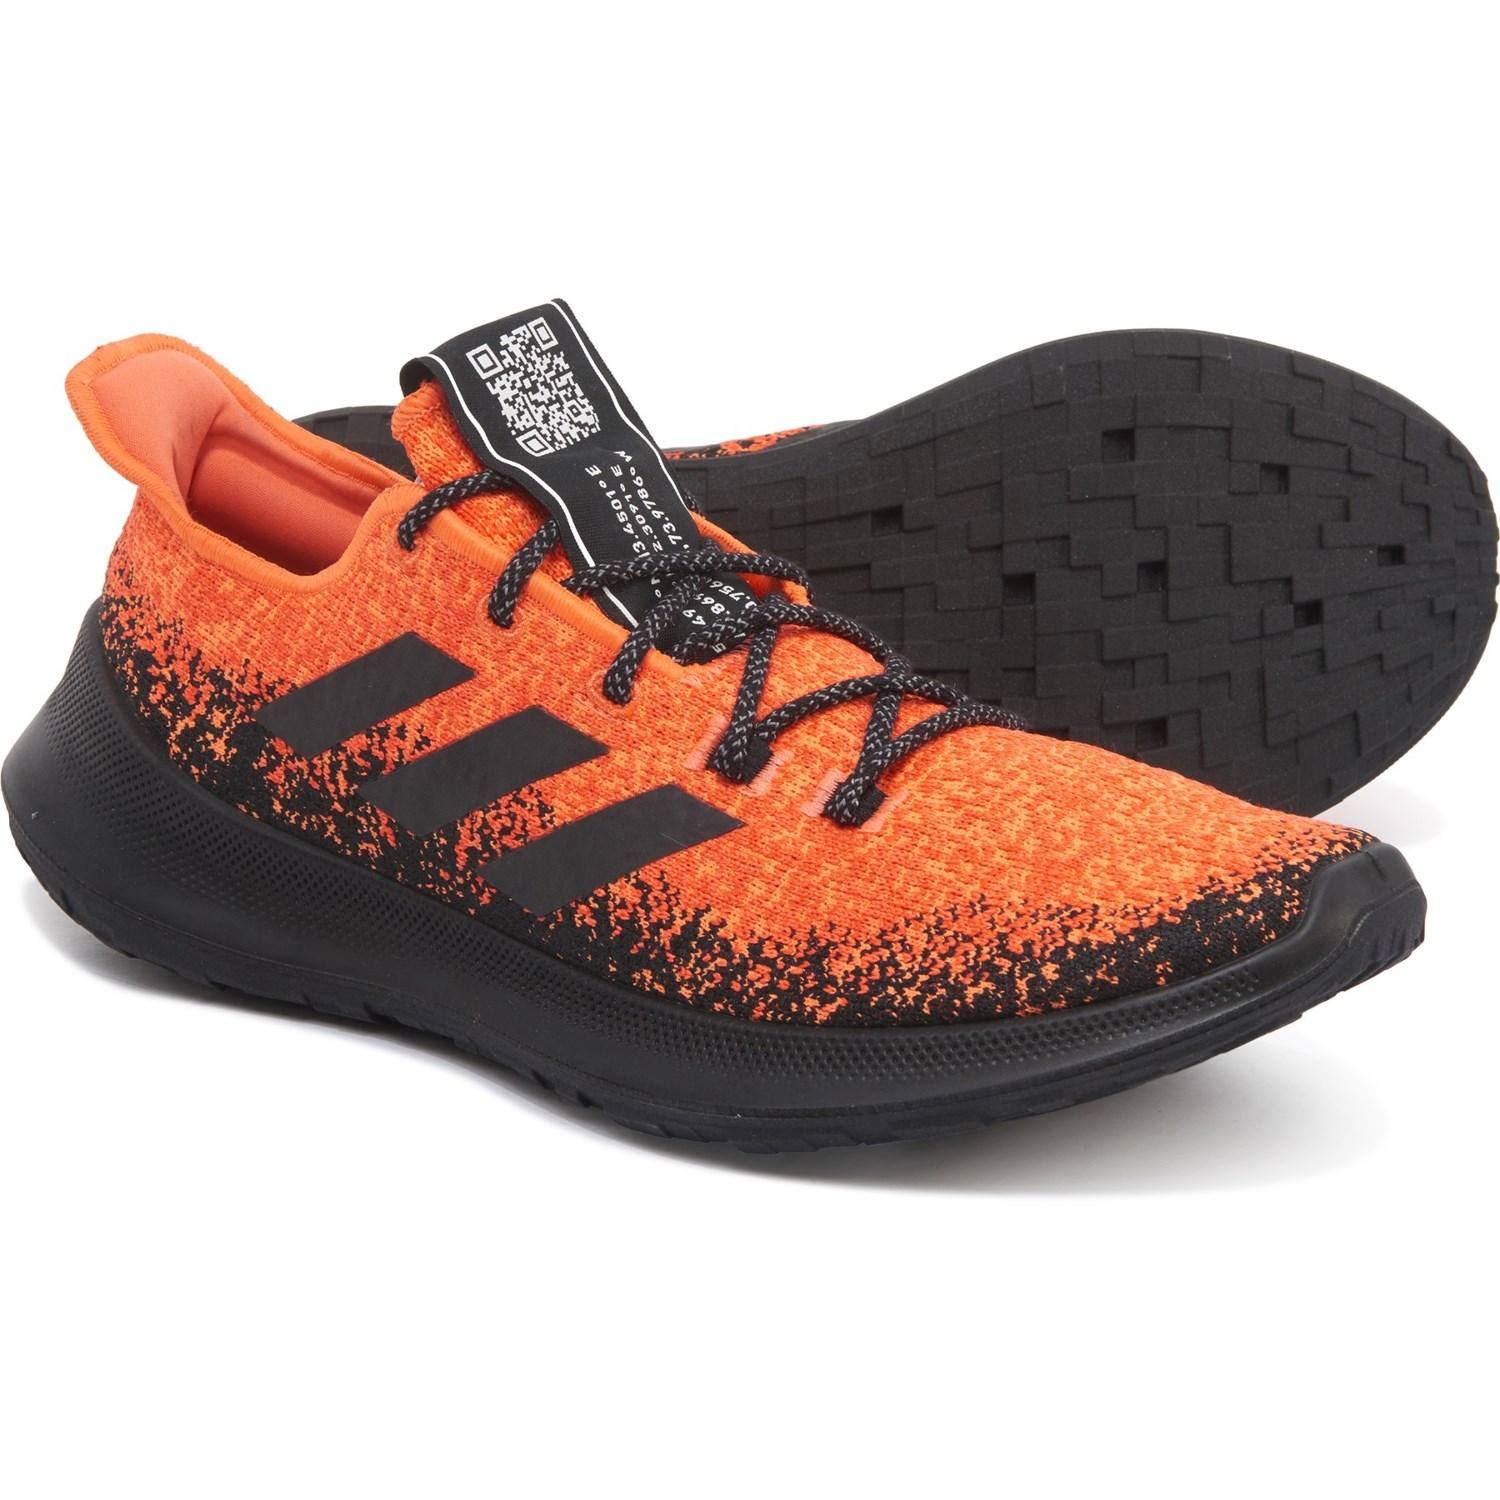 black and orange adidas shoes